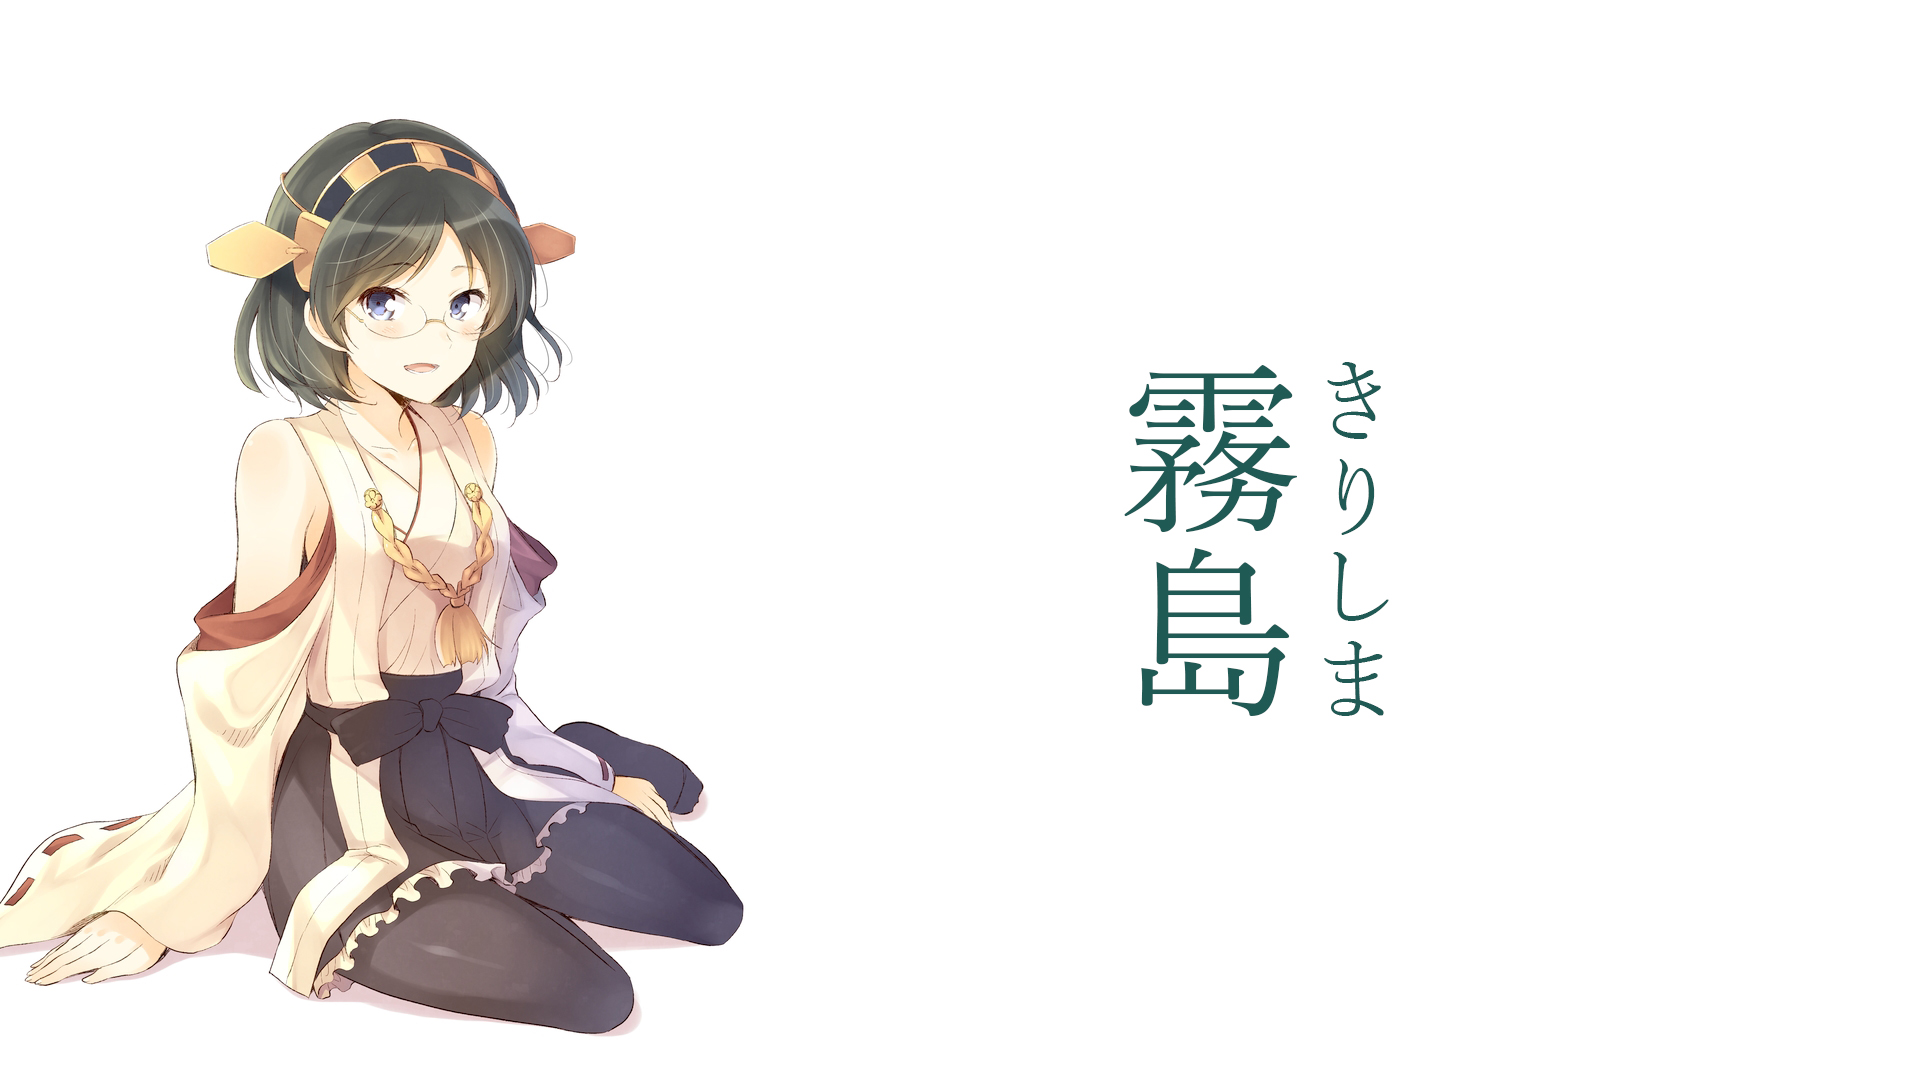 Descarga gratuita de fondo de pantalla para móvil de Animado, Colección Kantai, Kirishima (Kancolle).